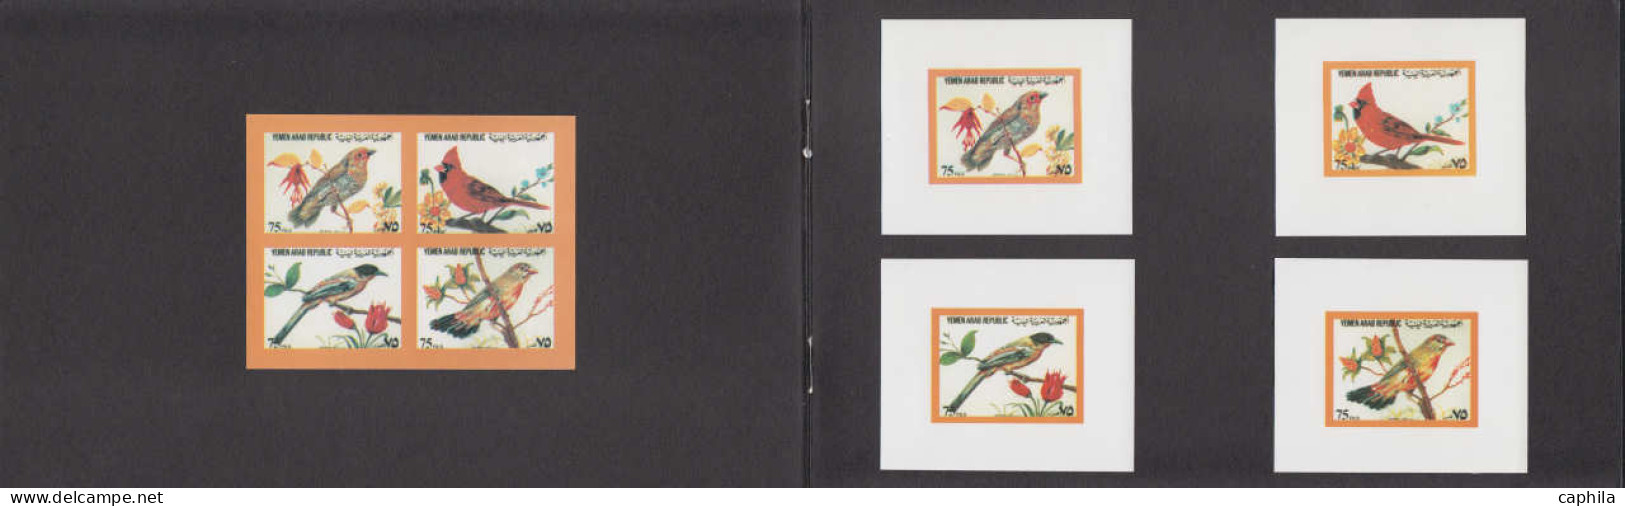 EPA YEMEN - Poste - Non émis, Oiseaux (horizontaux), 8 Exemplaires à L'unité + 2 Feuillets De 4 Dans 2 Livrets. - Yémen